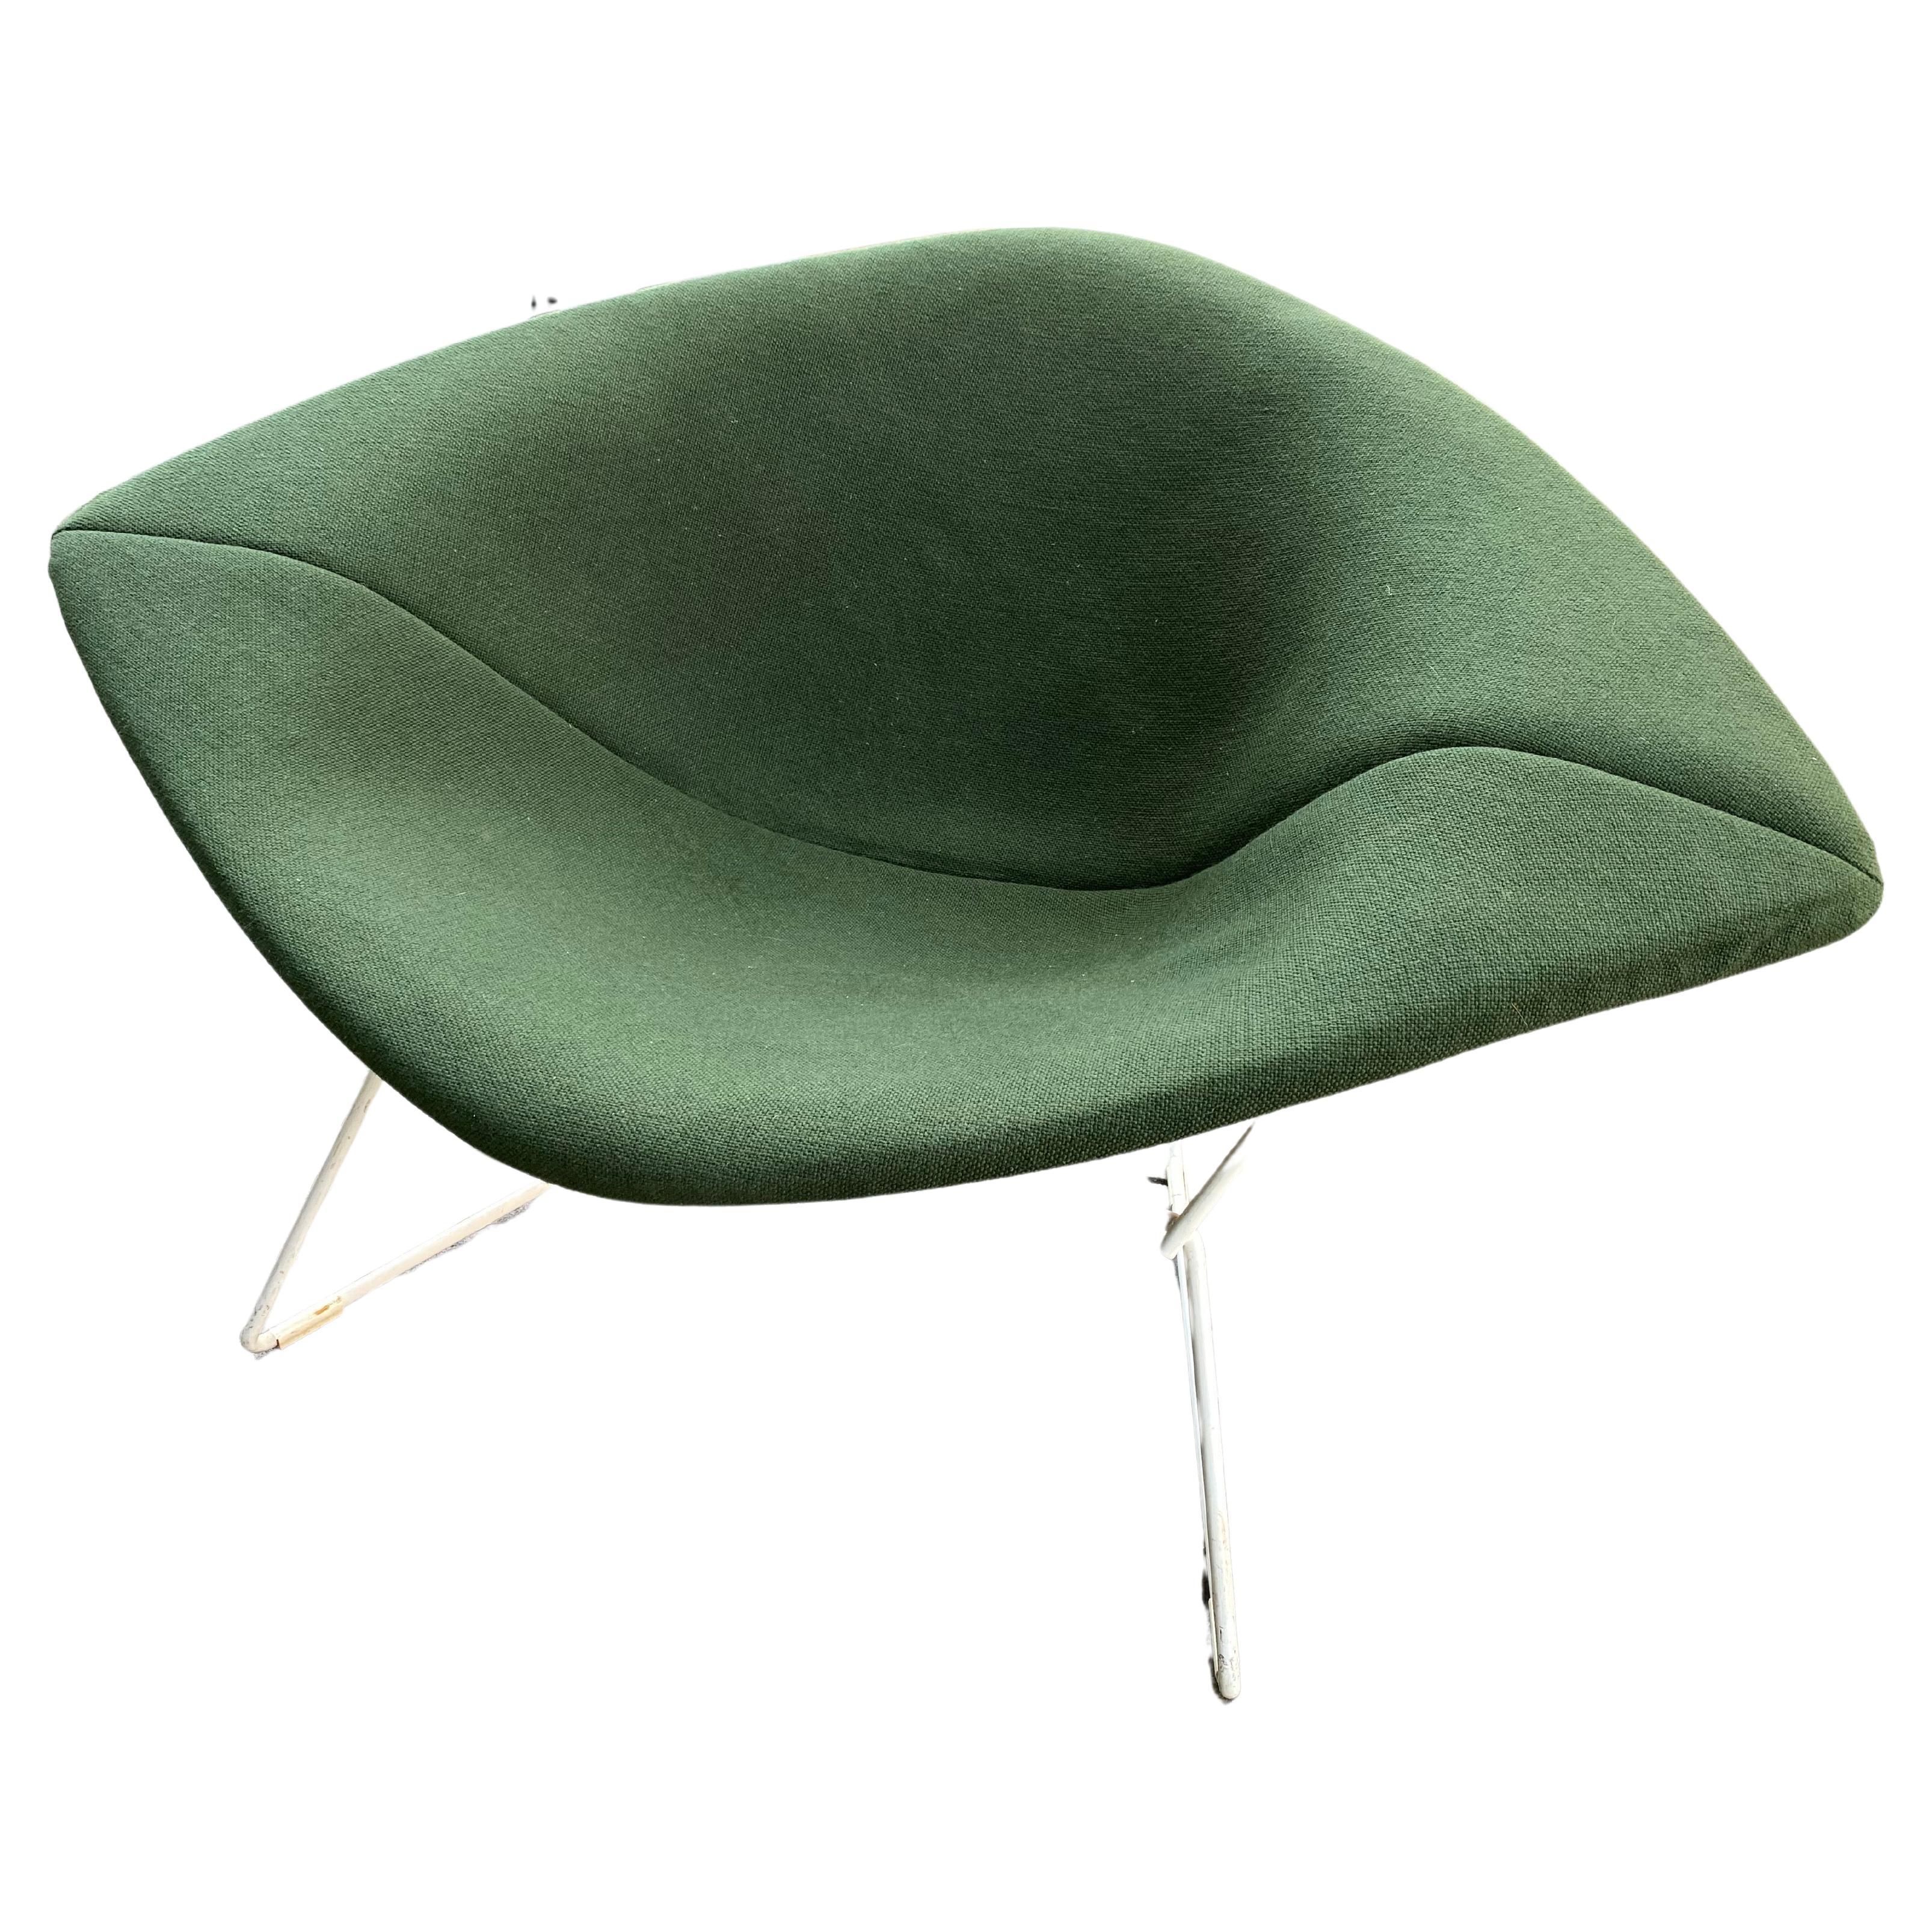 Harry Bertoia für Knoll Large Diamond Chair mit grünem Bezug.  Der Sockel ist original weiß.  Die Buchsen sind in gutem Zustand, und insgesamt ist die Abdeckung ziemlich sauber!  Schaumstoff ist noch weich!  Wahnsinnig bequem, groß und geräumig!